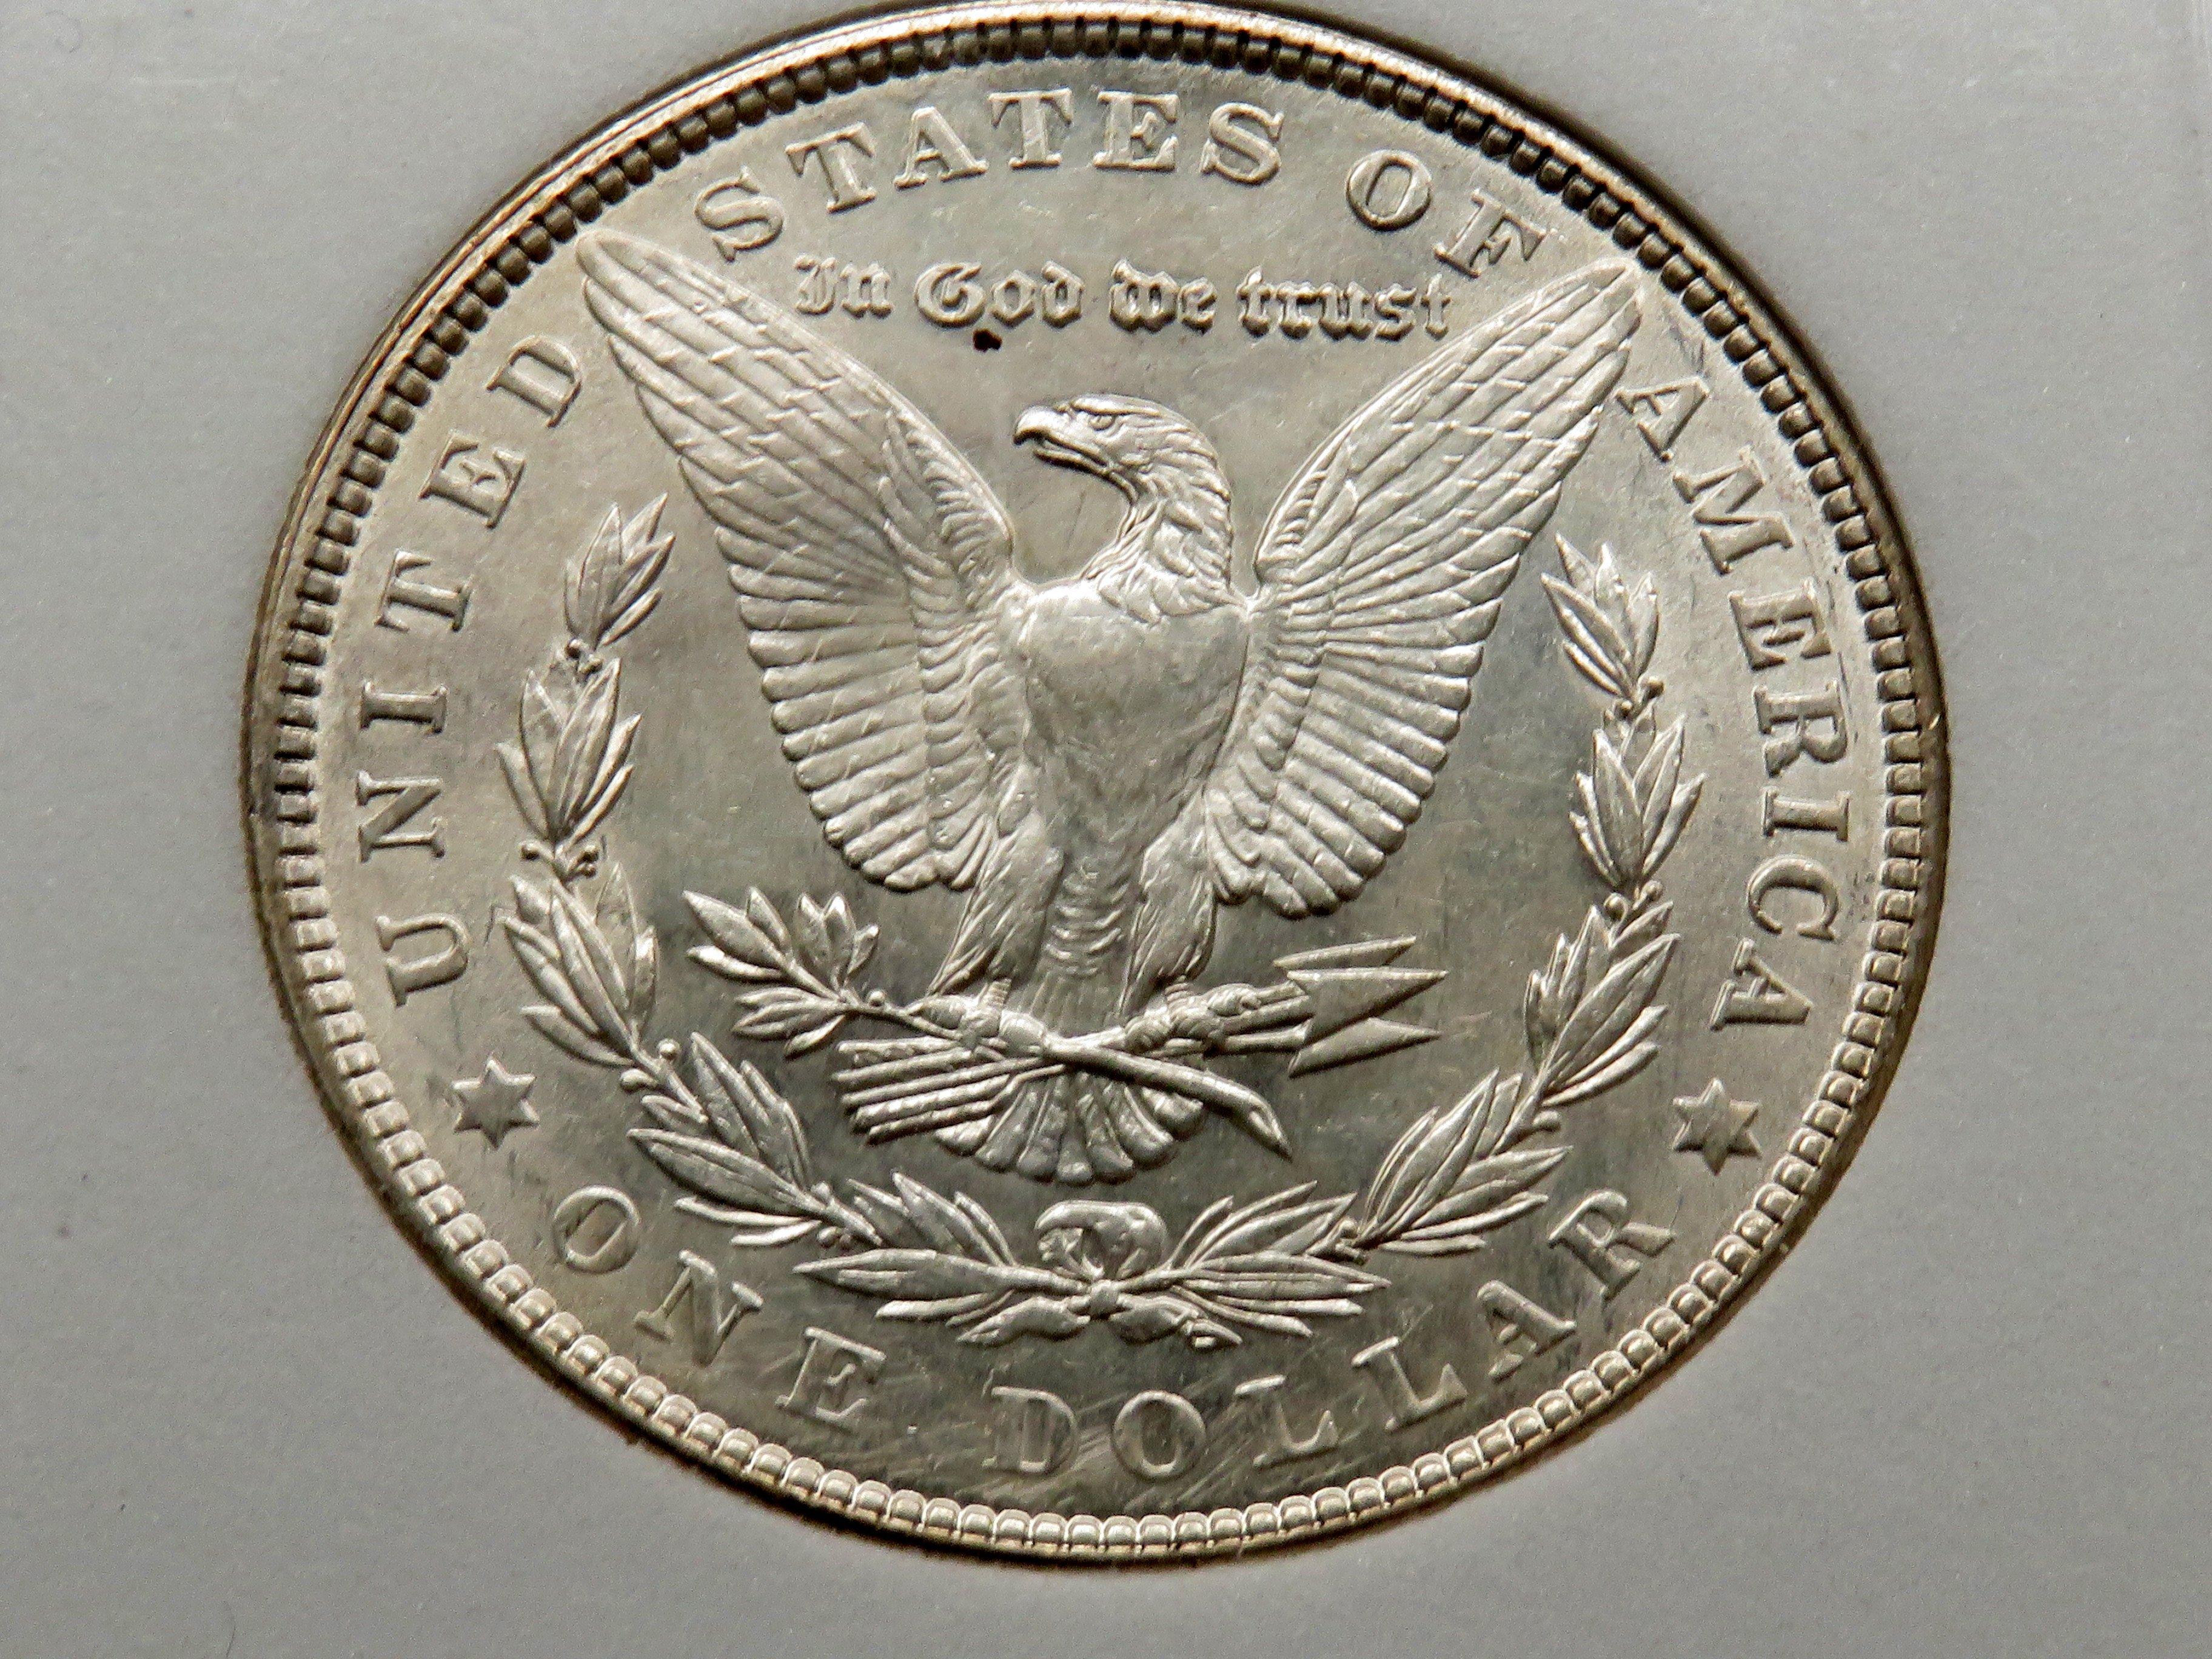 Morgan $ 1902 NNC Mint State